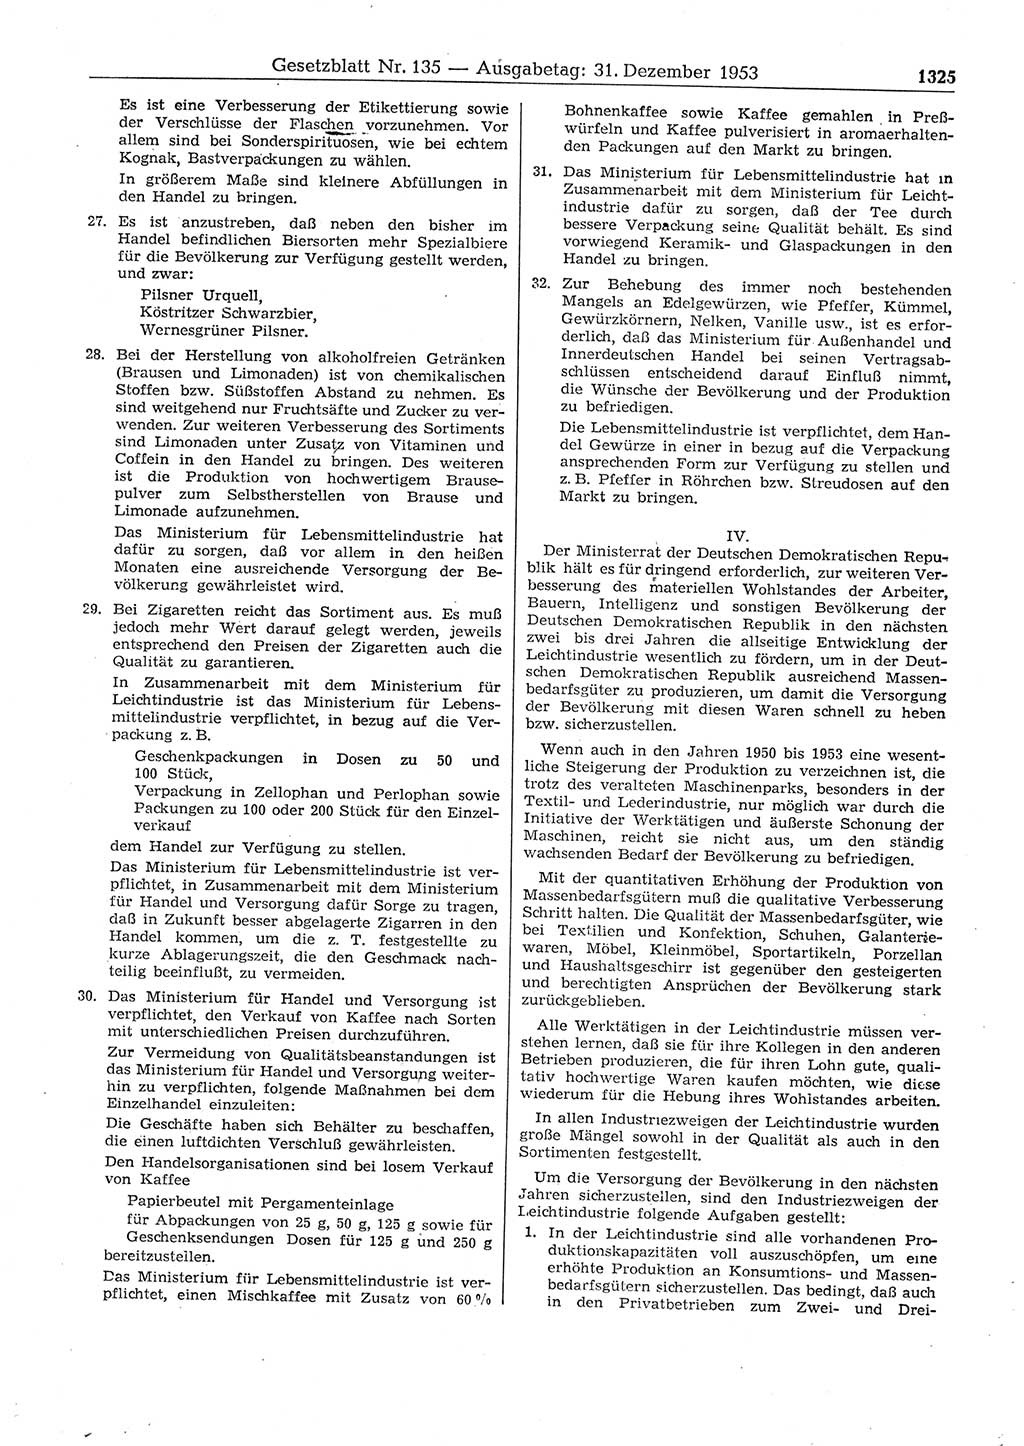 Gesetzblatt (GBl.) der Deutschen Demokratischen Republik (DDR) 1953, Seite 1325 (GBl. DDR 1953, S. 1325)